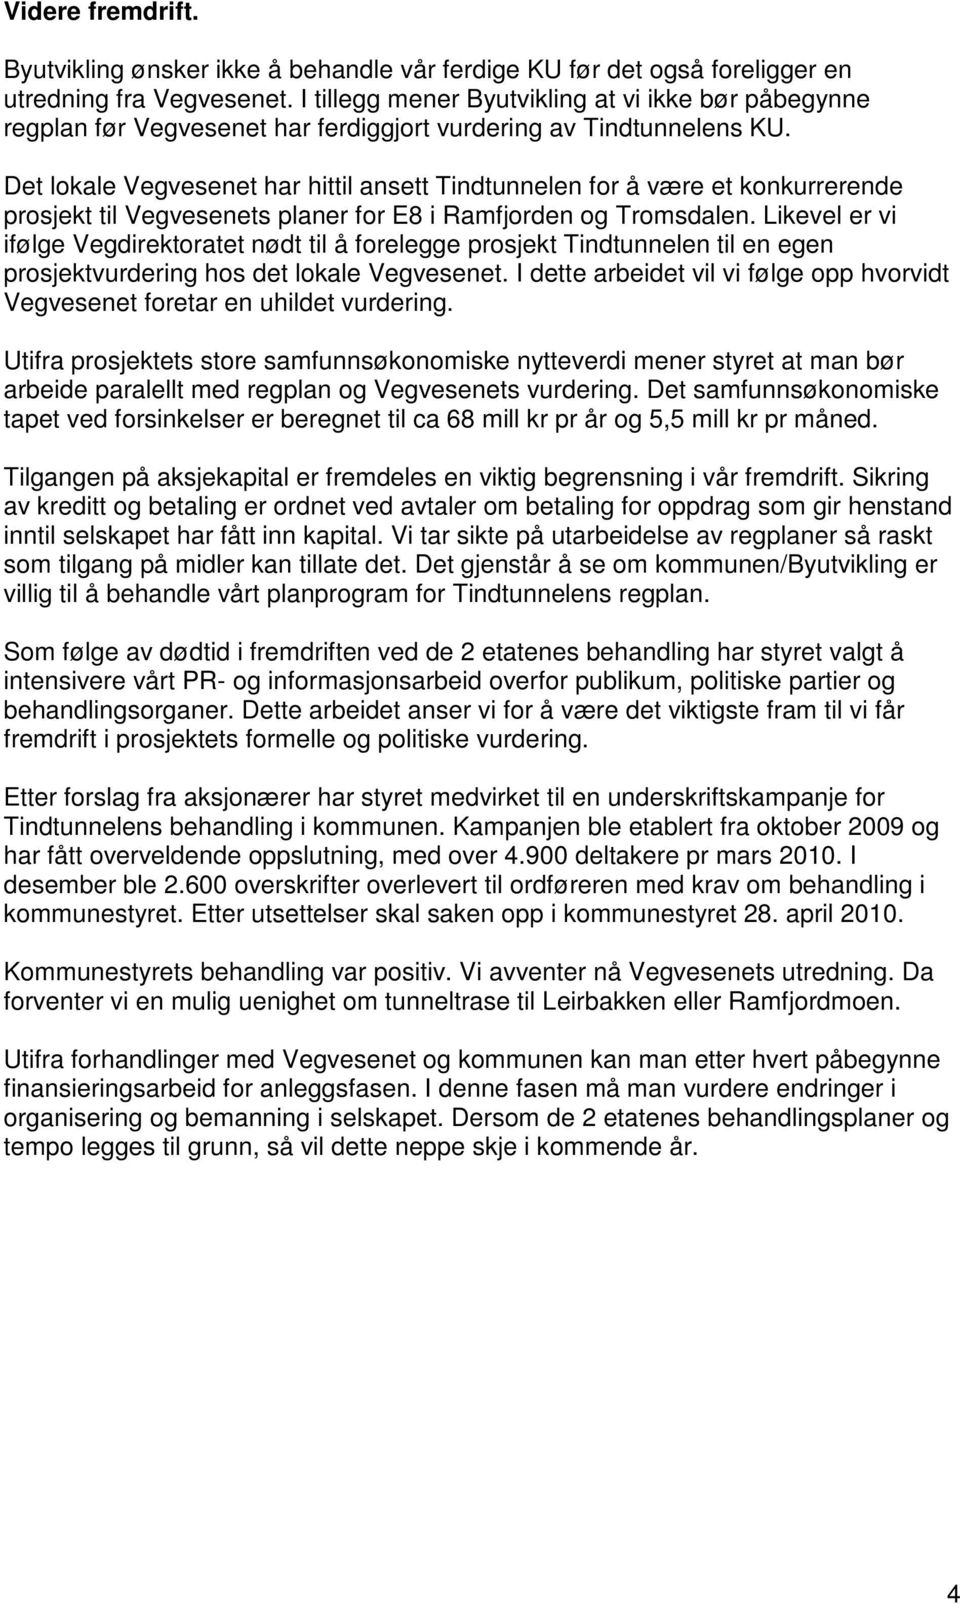 Det lokale Vegvesenet har hittil ansett Tindtunnelen for å være et konkurrerende prosjekt til Vegvesenets planer for E8 i Ramfjorden og Tromsdalen.